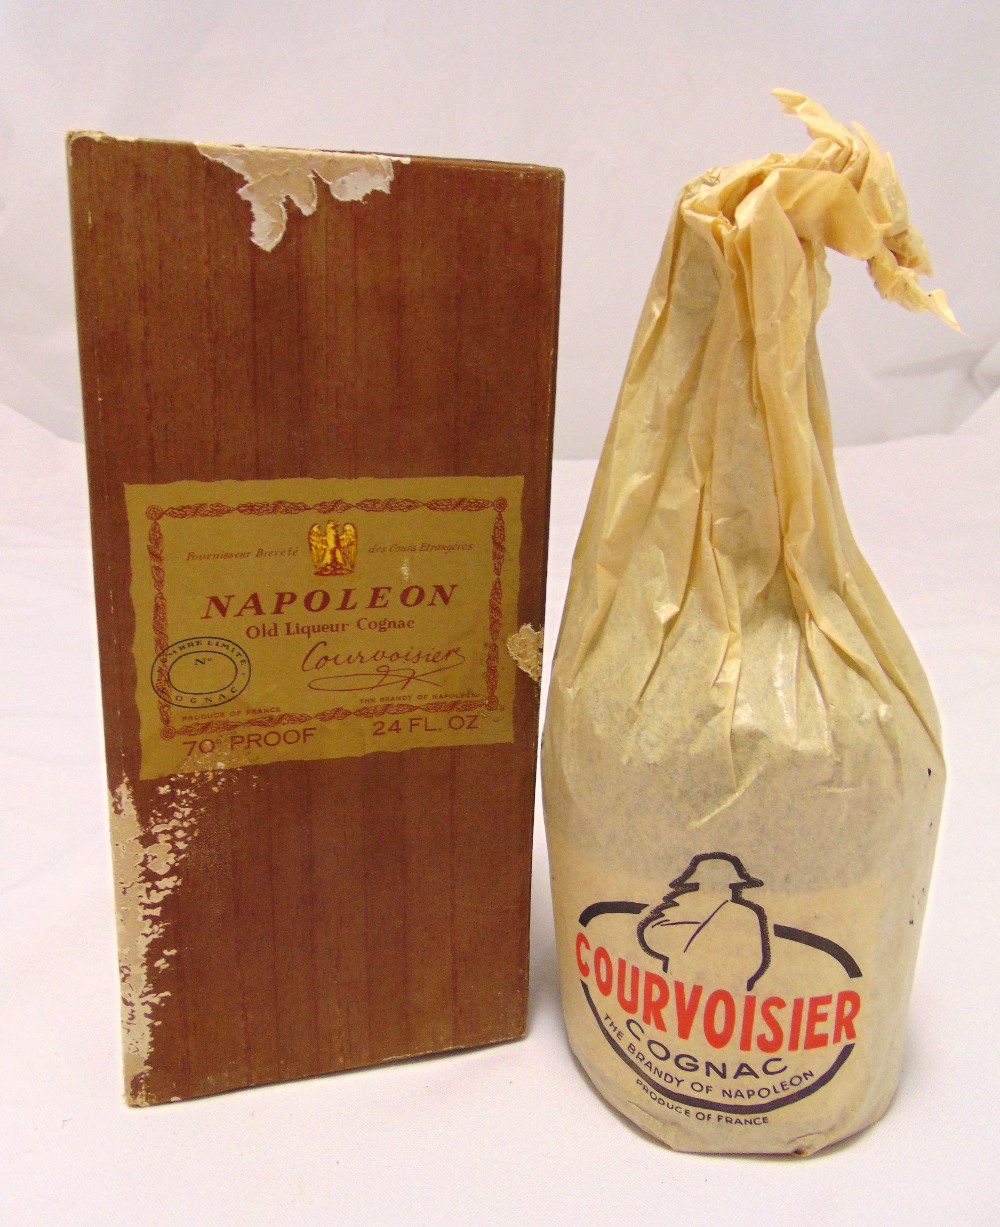 Courvosier Napoleon Old Liqueur Cognac 70 proof 24fl oz, circa 1960 in presentation packaging